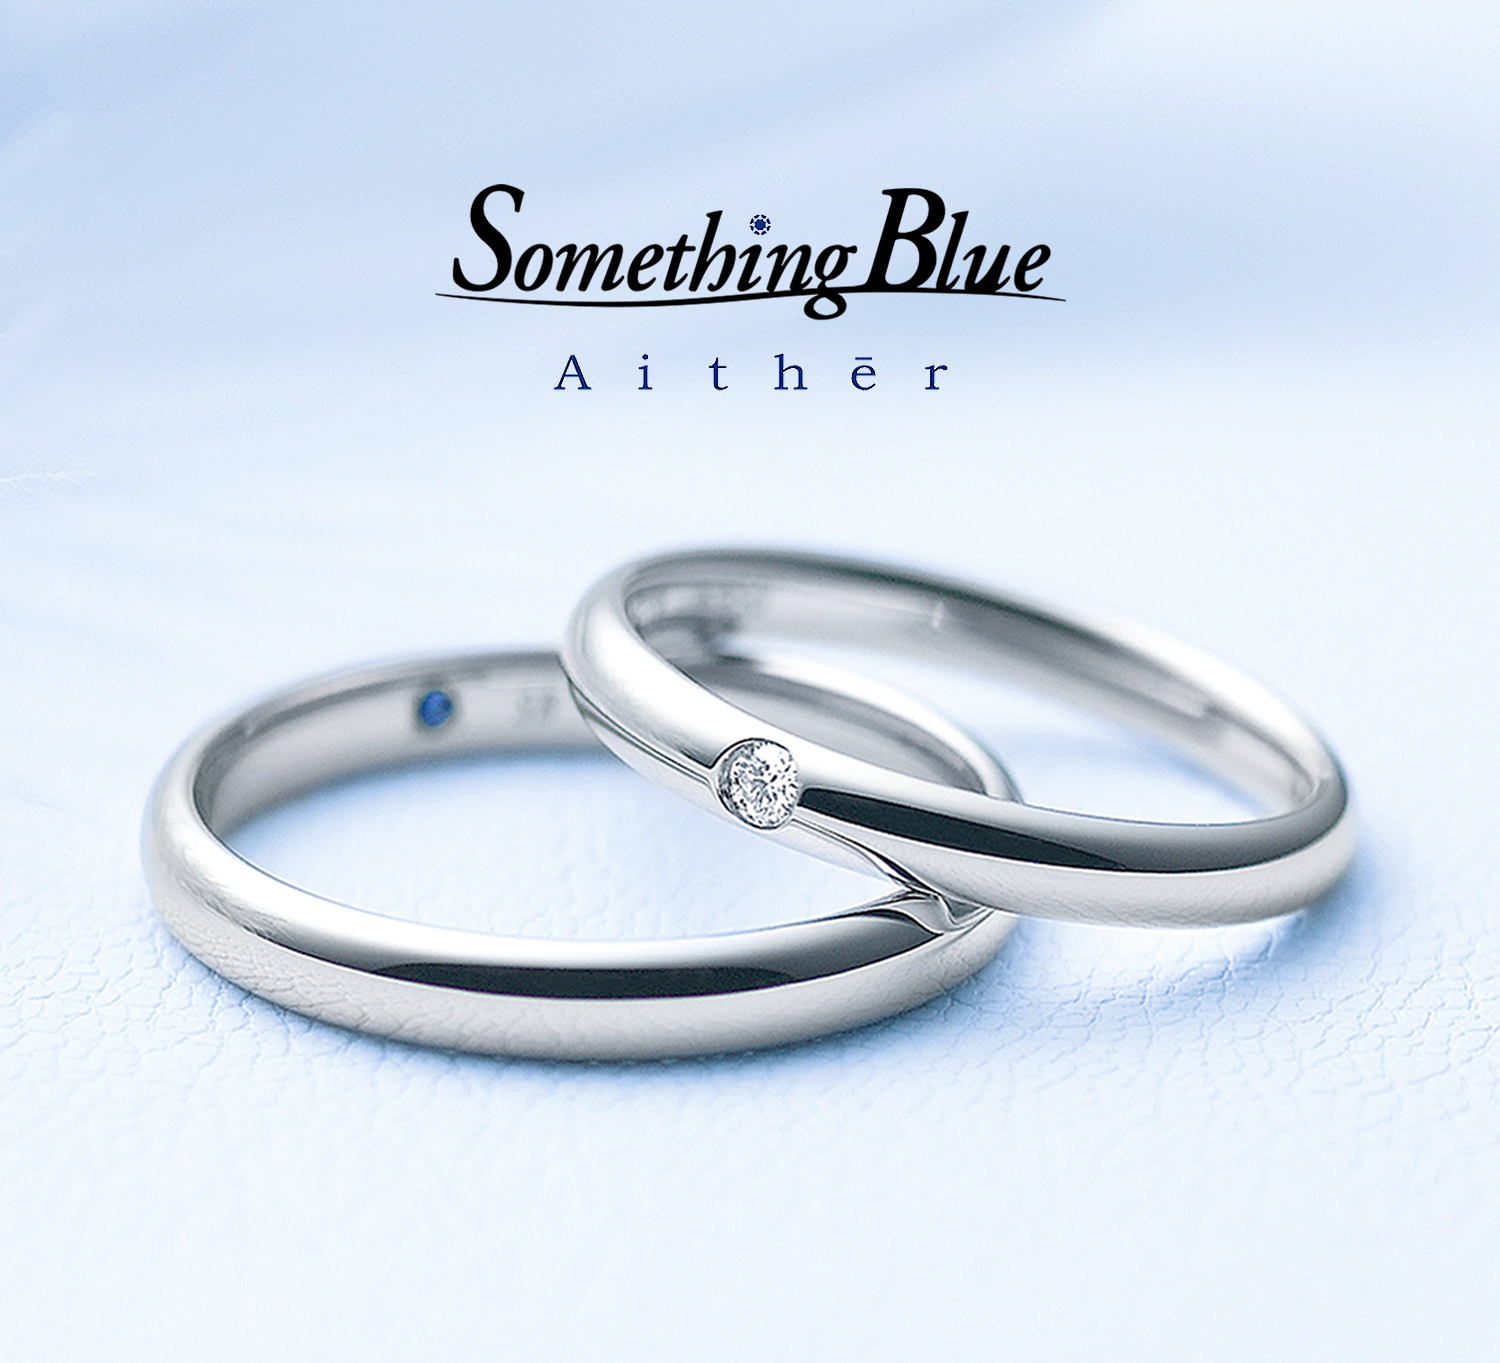 SomethingBlueAitherサムシングブルーアイテールの婚約指輪と結婚指輪でエンゲージリングとマリッジリングでセットリングと3本セット